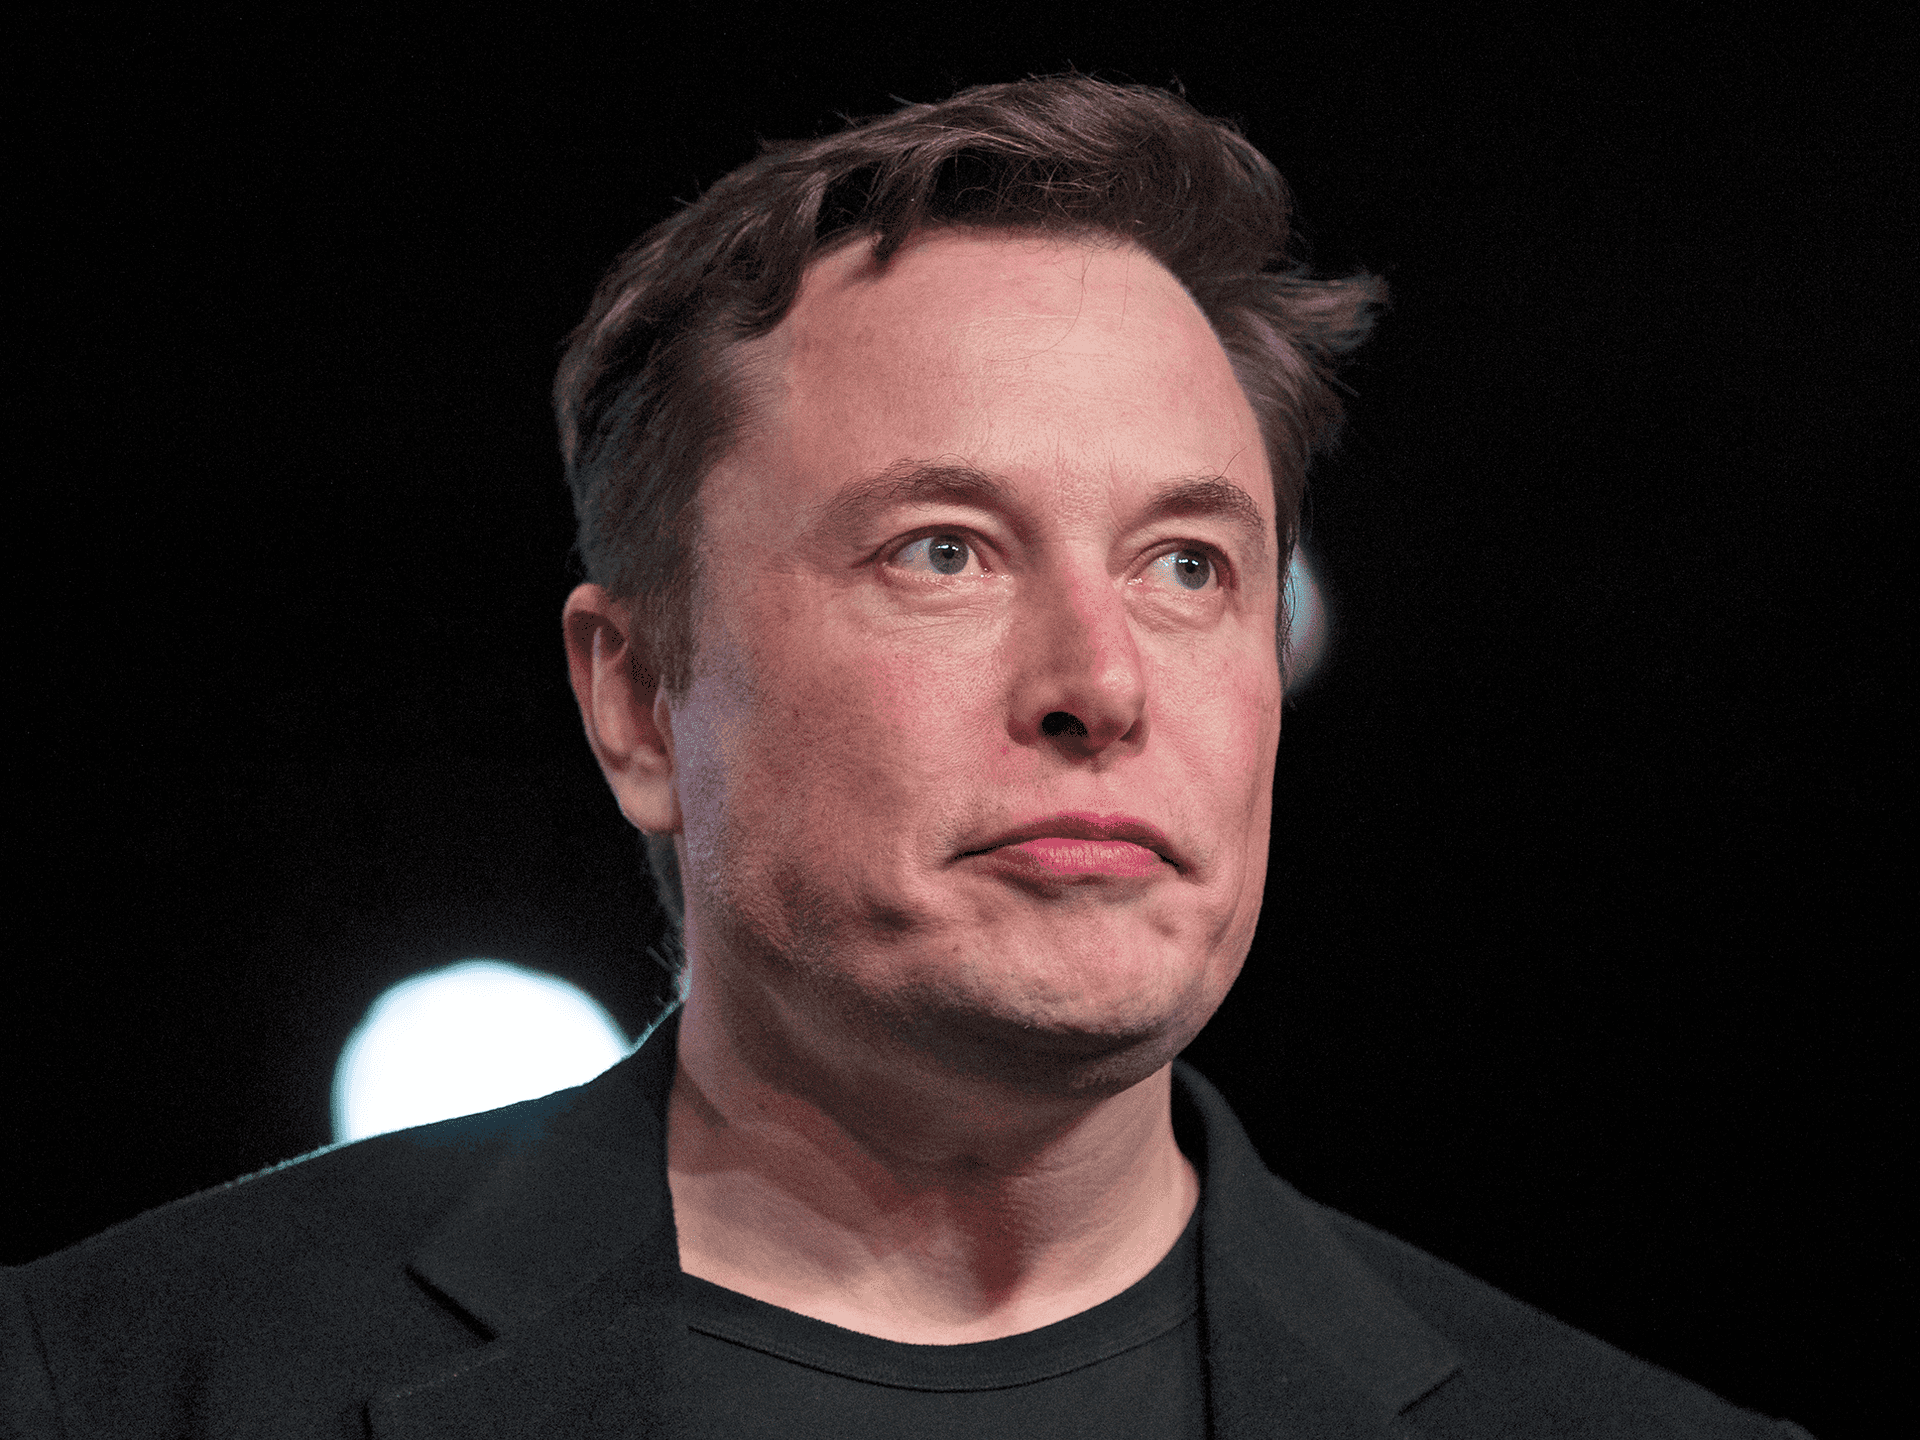 "Leading Innovation: Elon Musk"